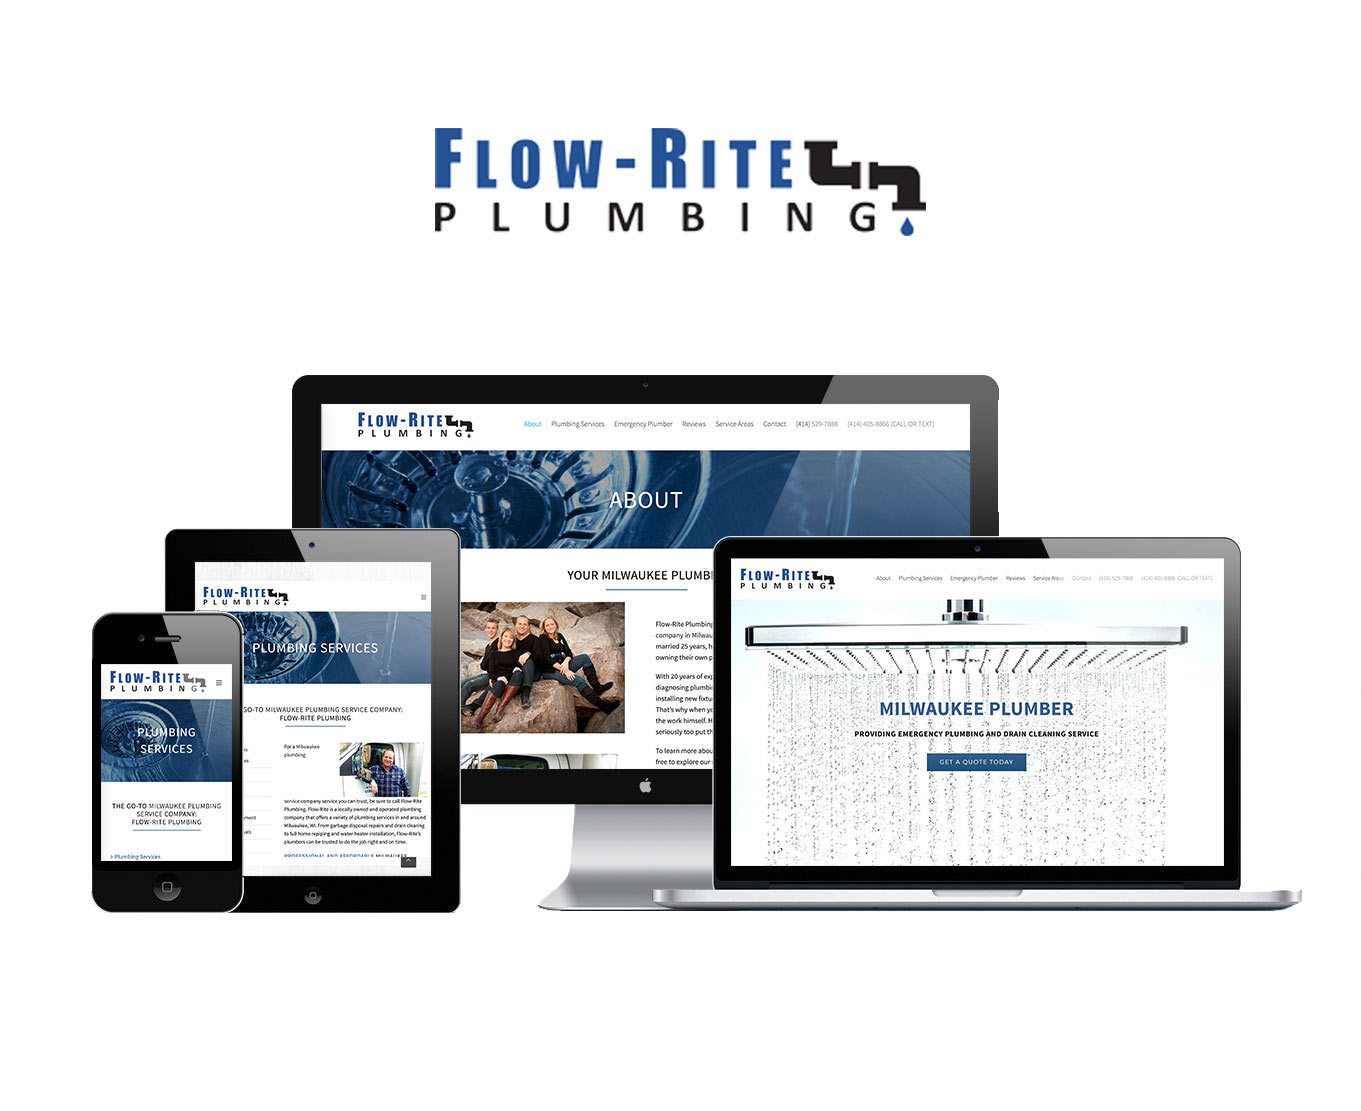 Flow-Rite Plumbing